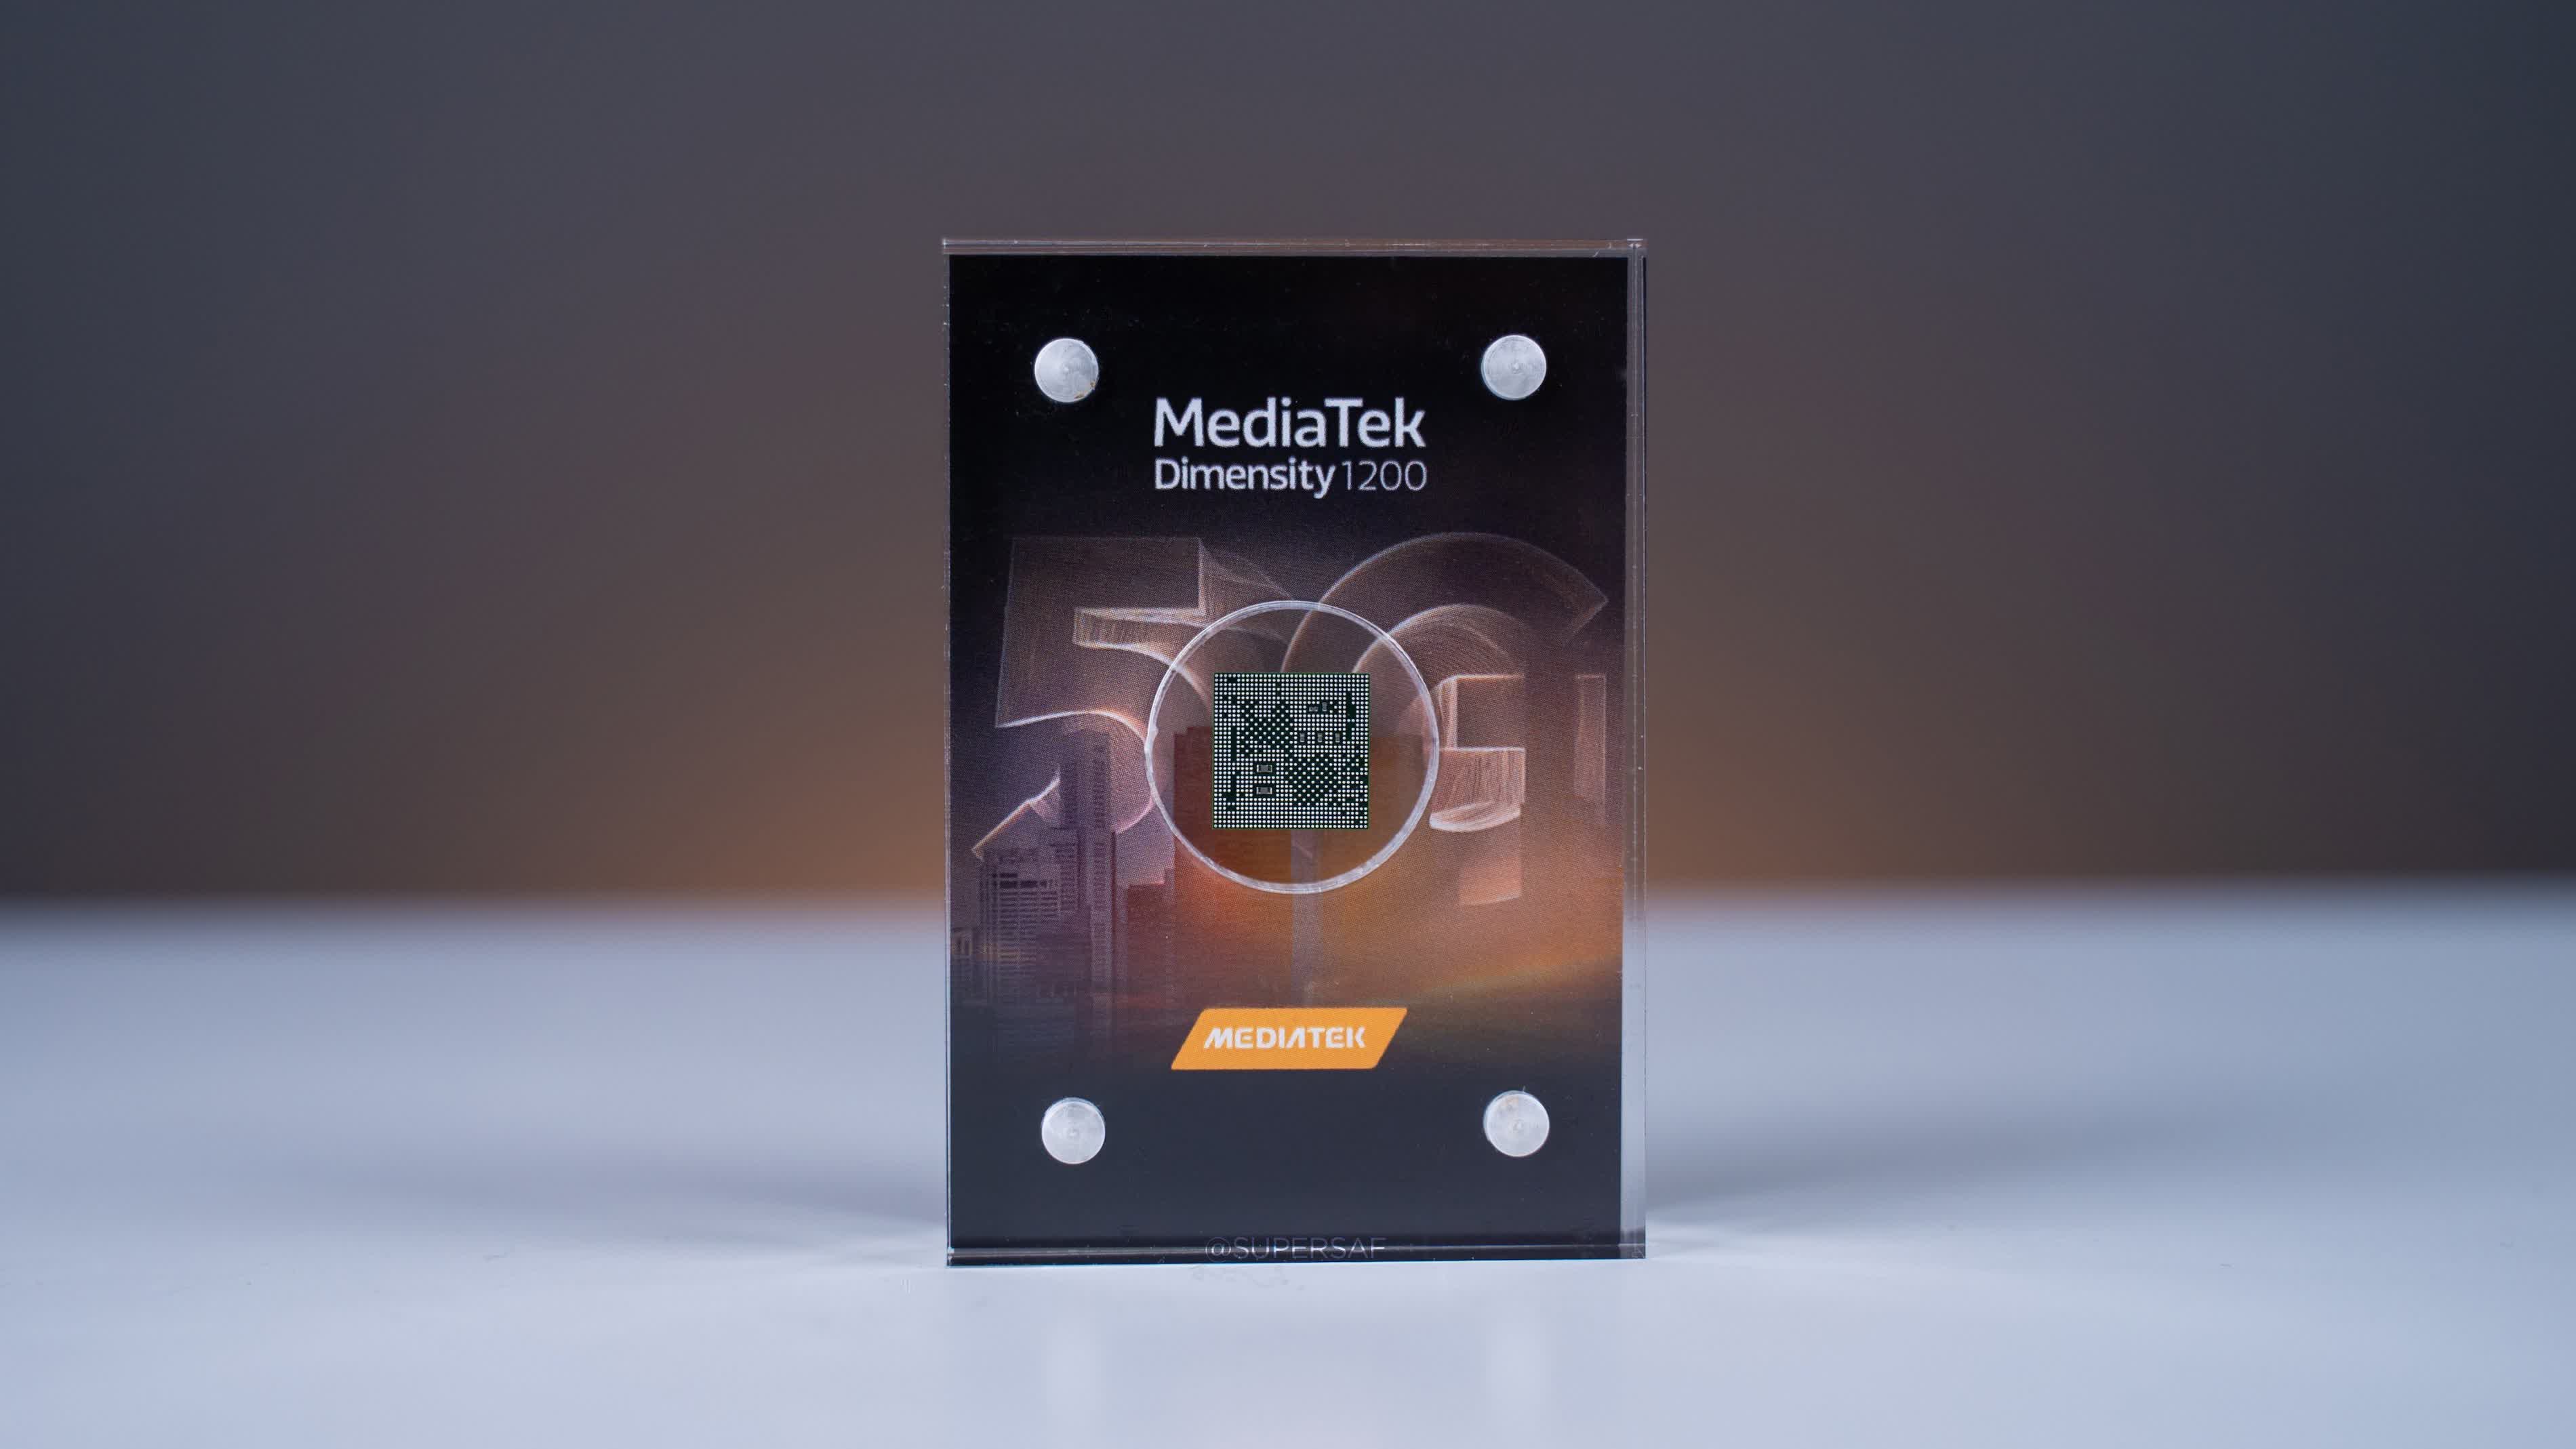 MediaTek is slowly eating away Qualcomm's share of the mobile chipset market